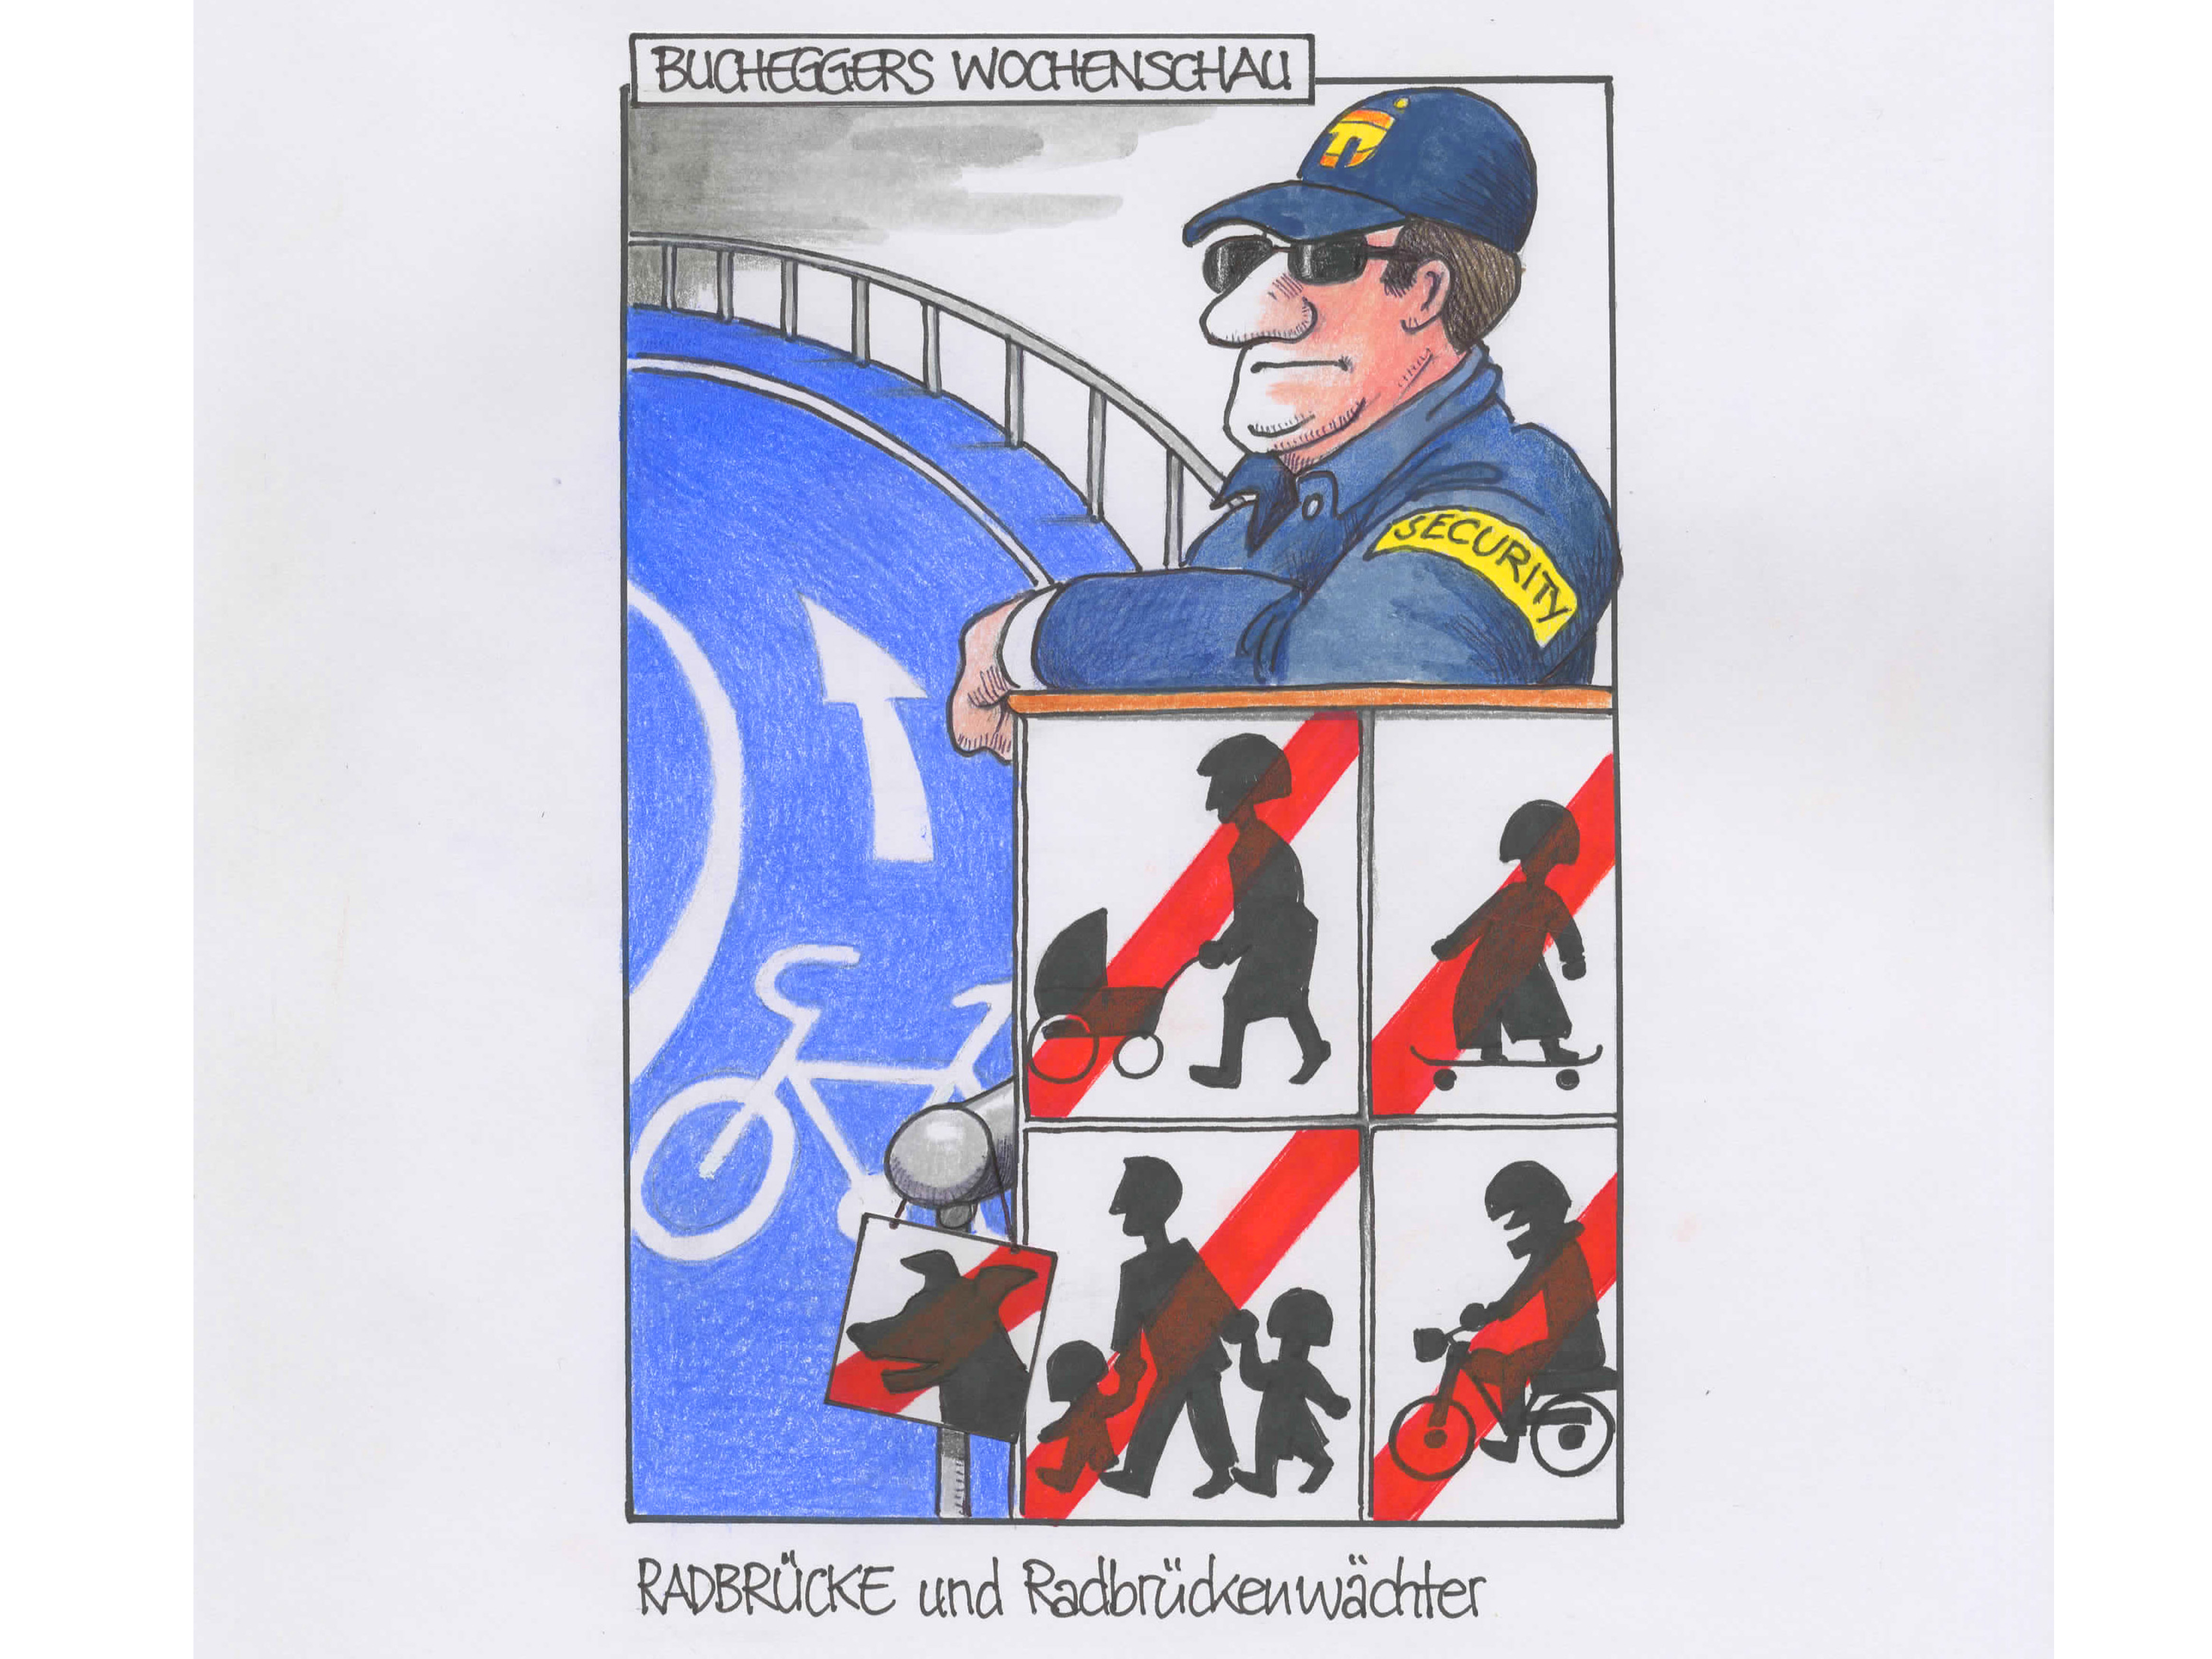 Wochenschau „Radbrücke und Radbrückenwächter“, 11.6.2020, Buntstiftzeichnung